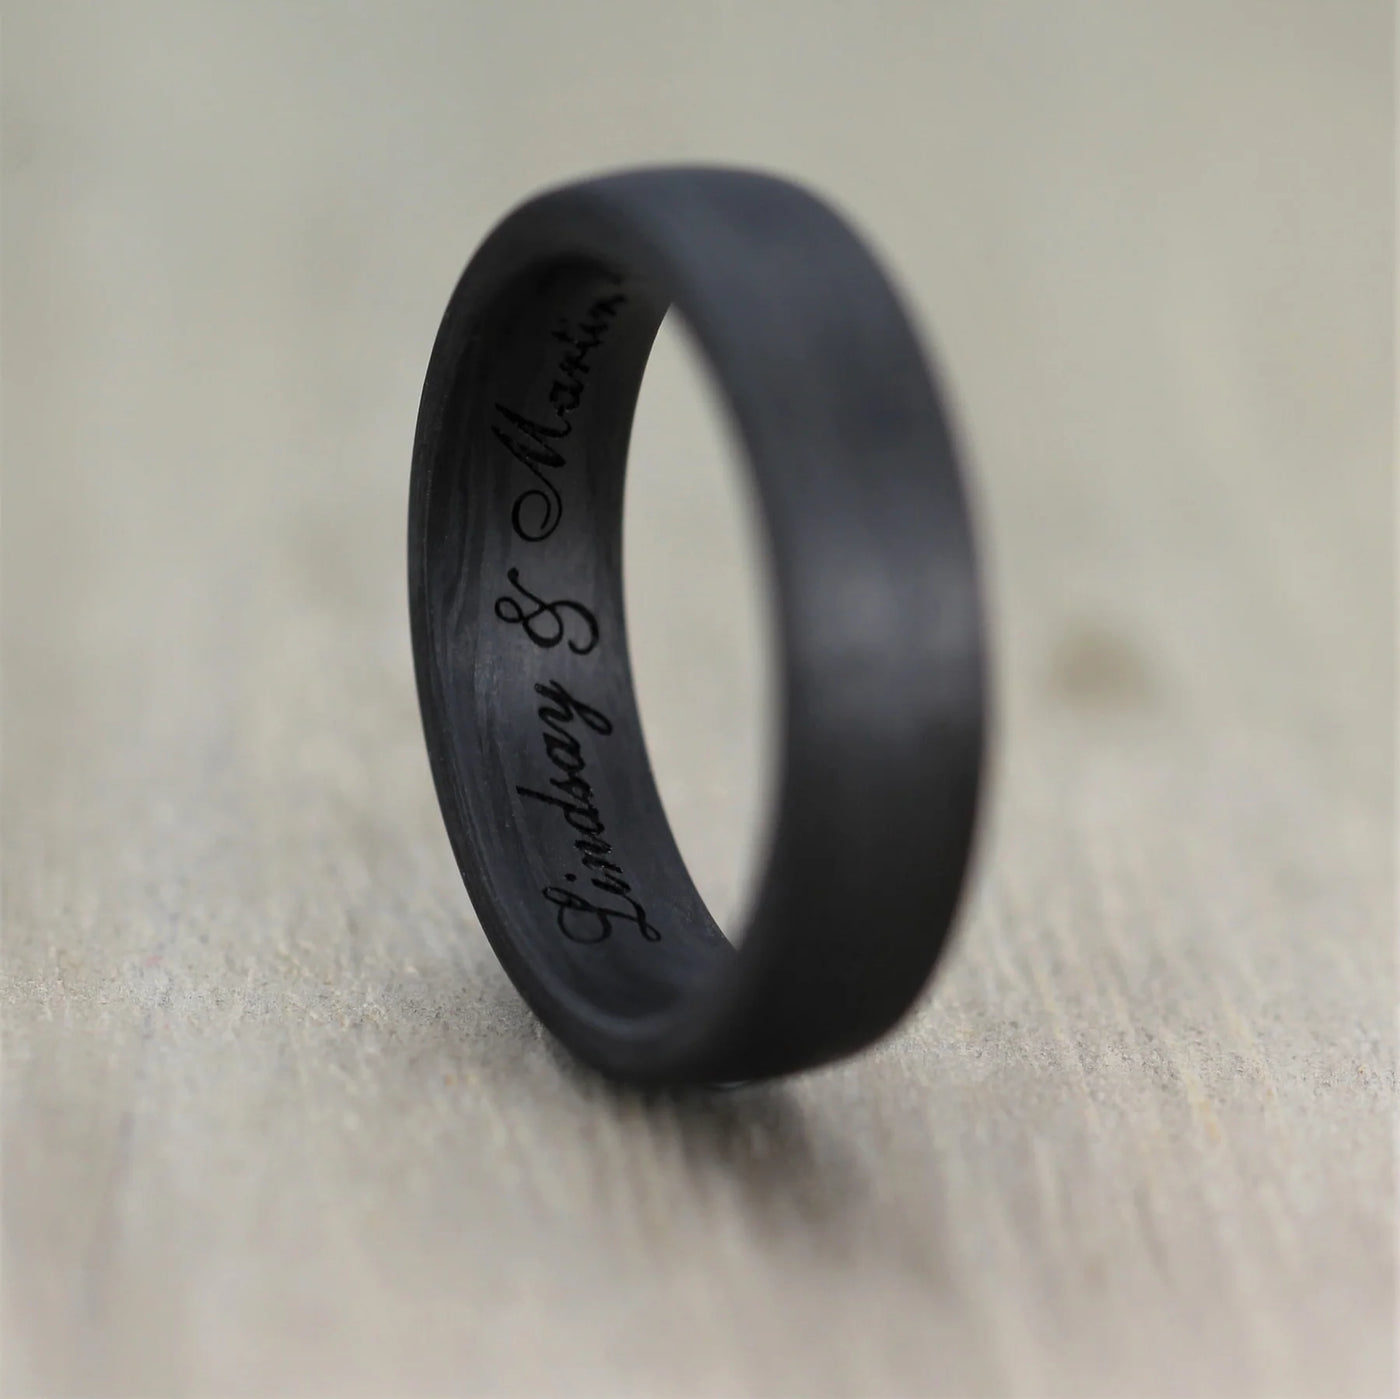 Carbon Fibre & Rose Gold Wedding Ring Band + Free Engraving!